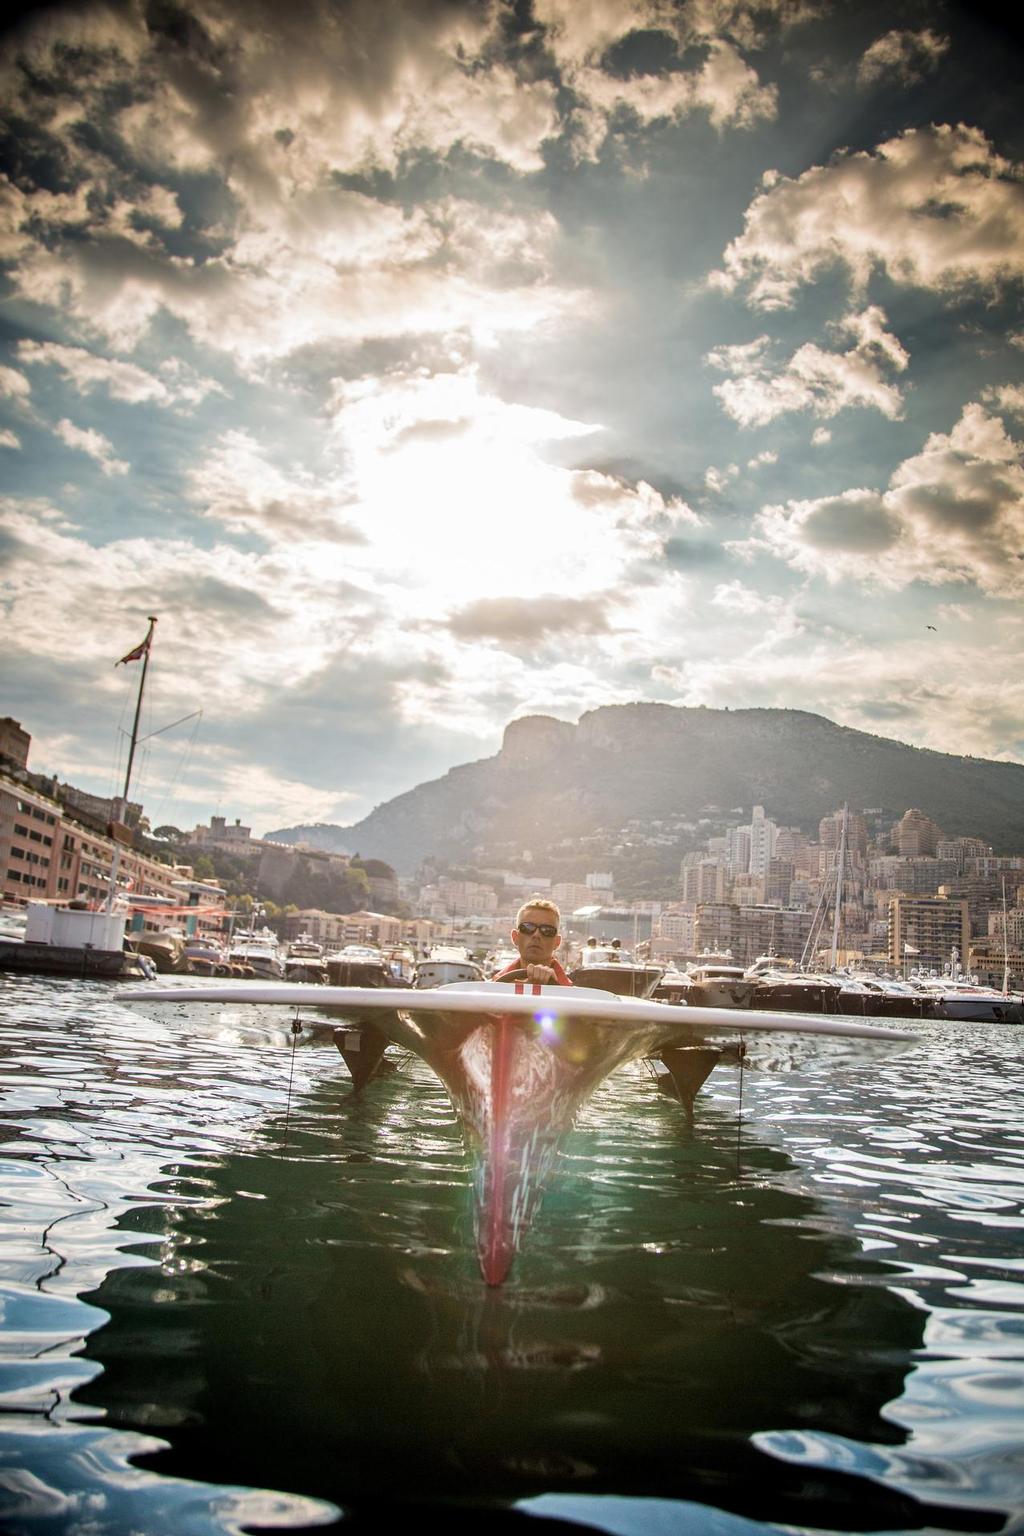 Solar1 Monte Carlo Cup 2014 © Hayley Atkinson